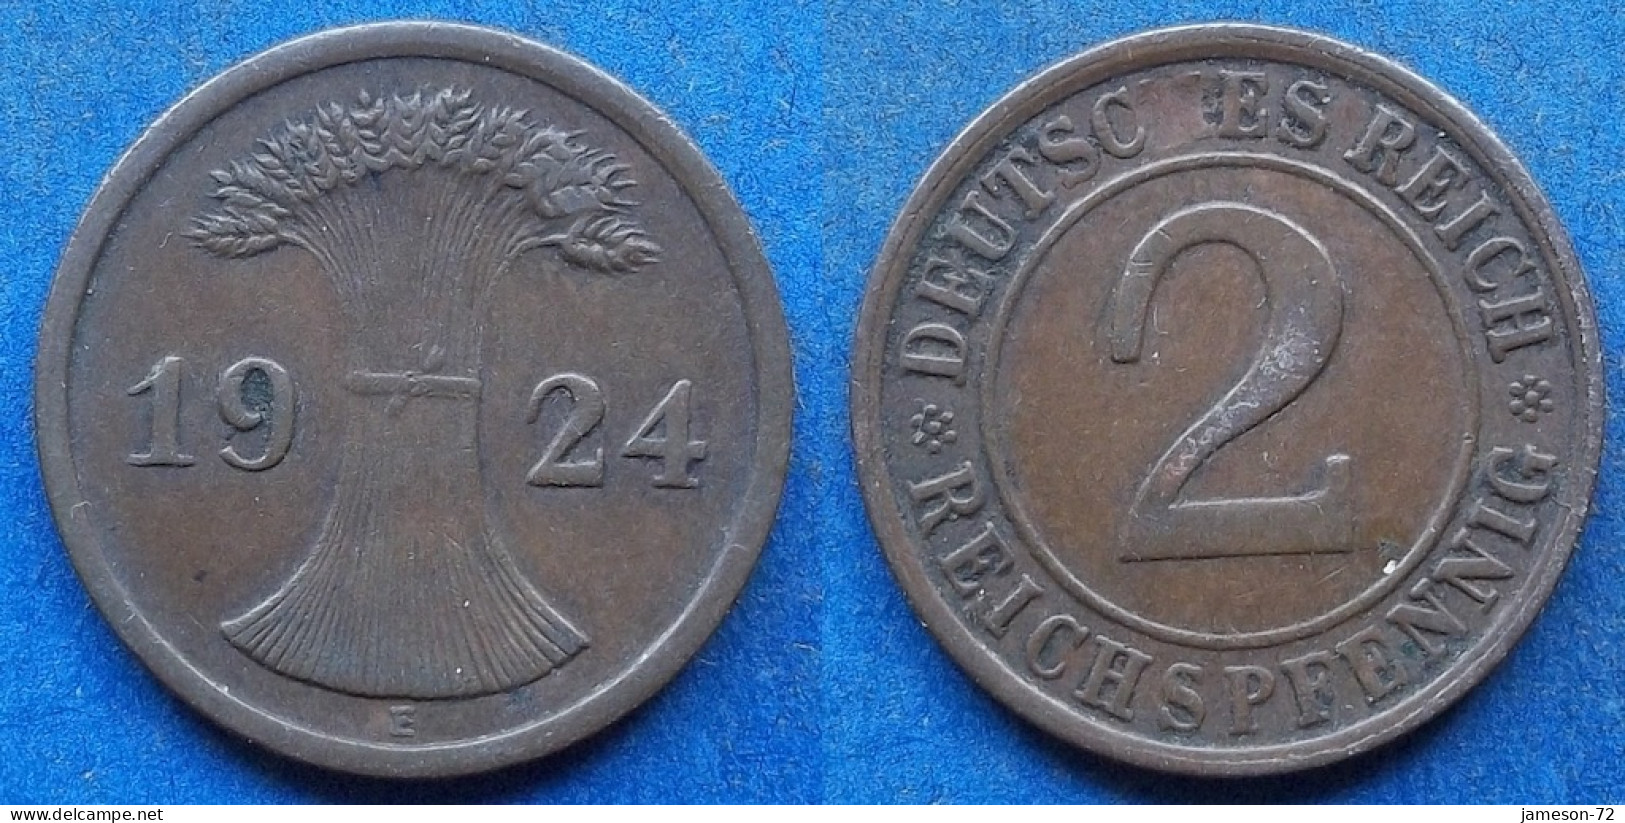 GERMANY - 2 Reichspfennig 1924 E KM# 38 Weimar Republic Reichsmark Coinage (1924-1938) - Edelweiss Coins - 2 Renten- & 2 Reichspfennig